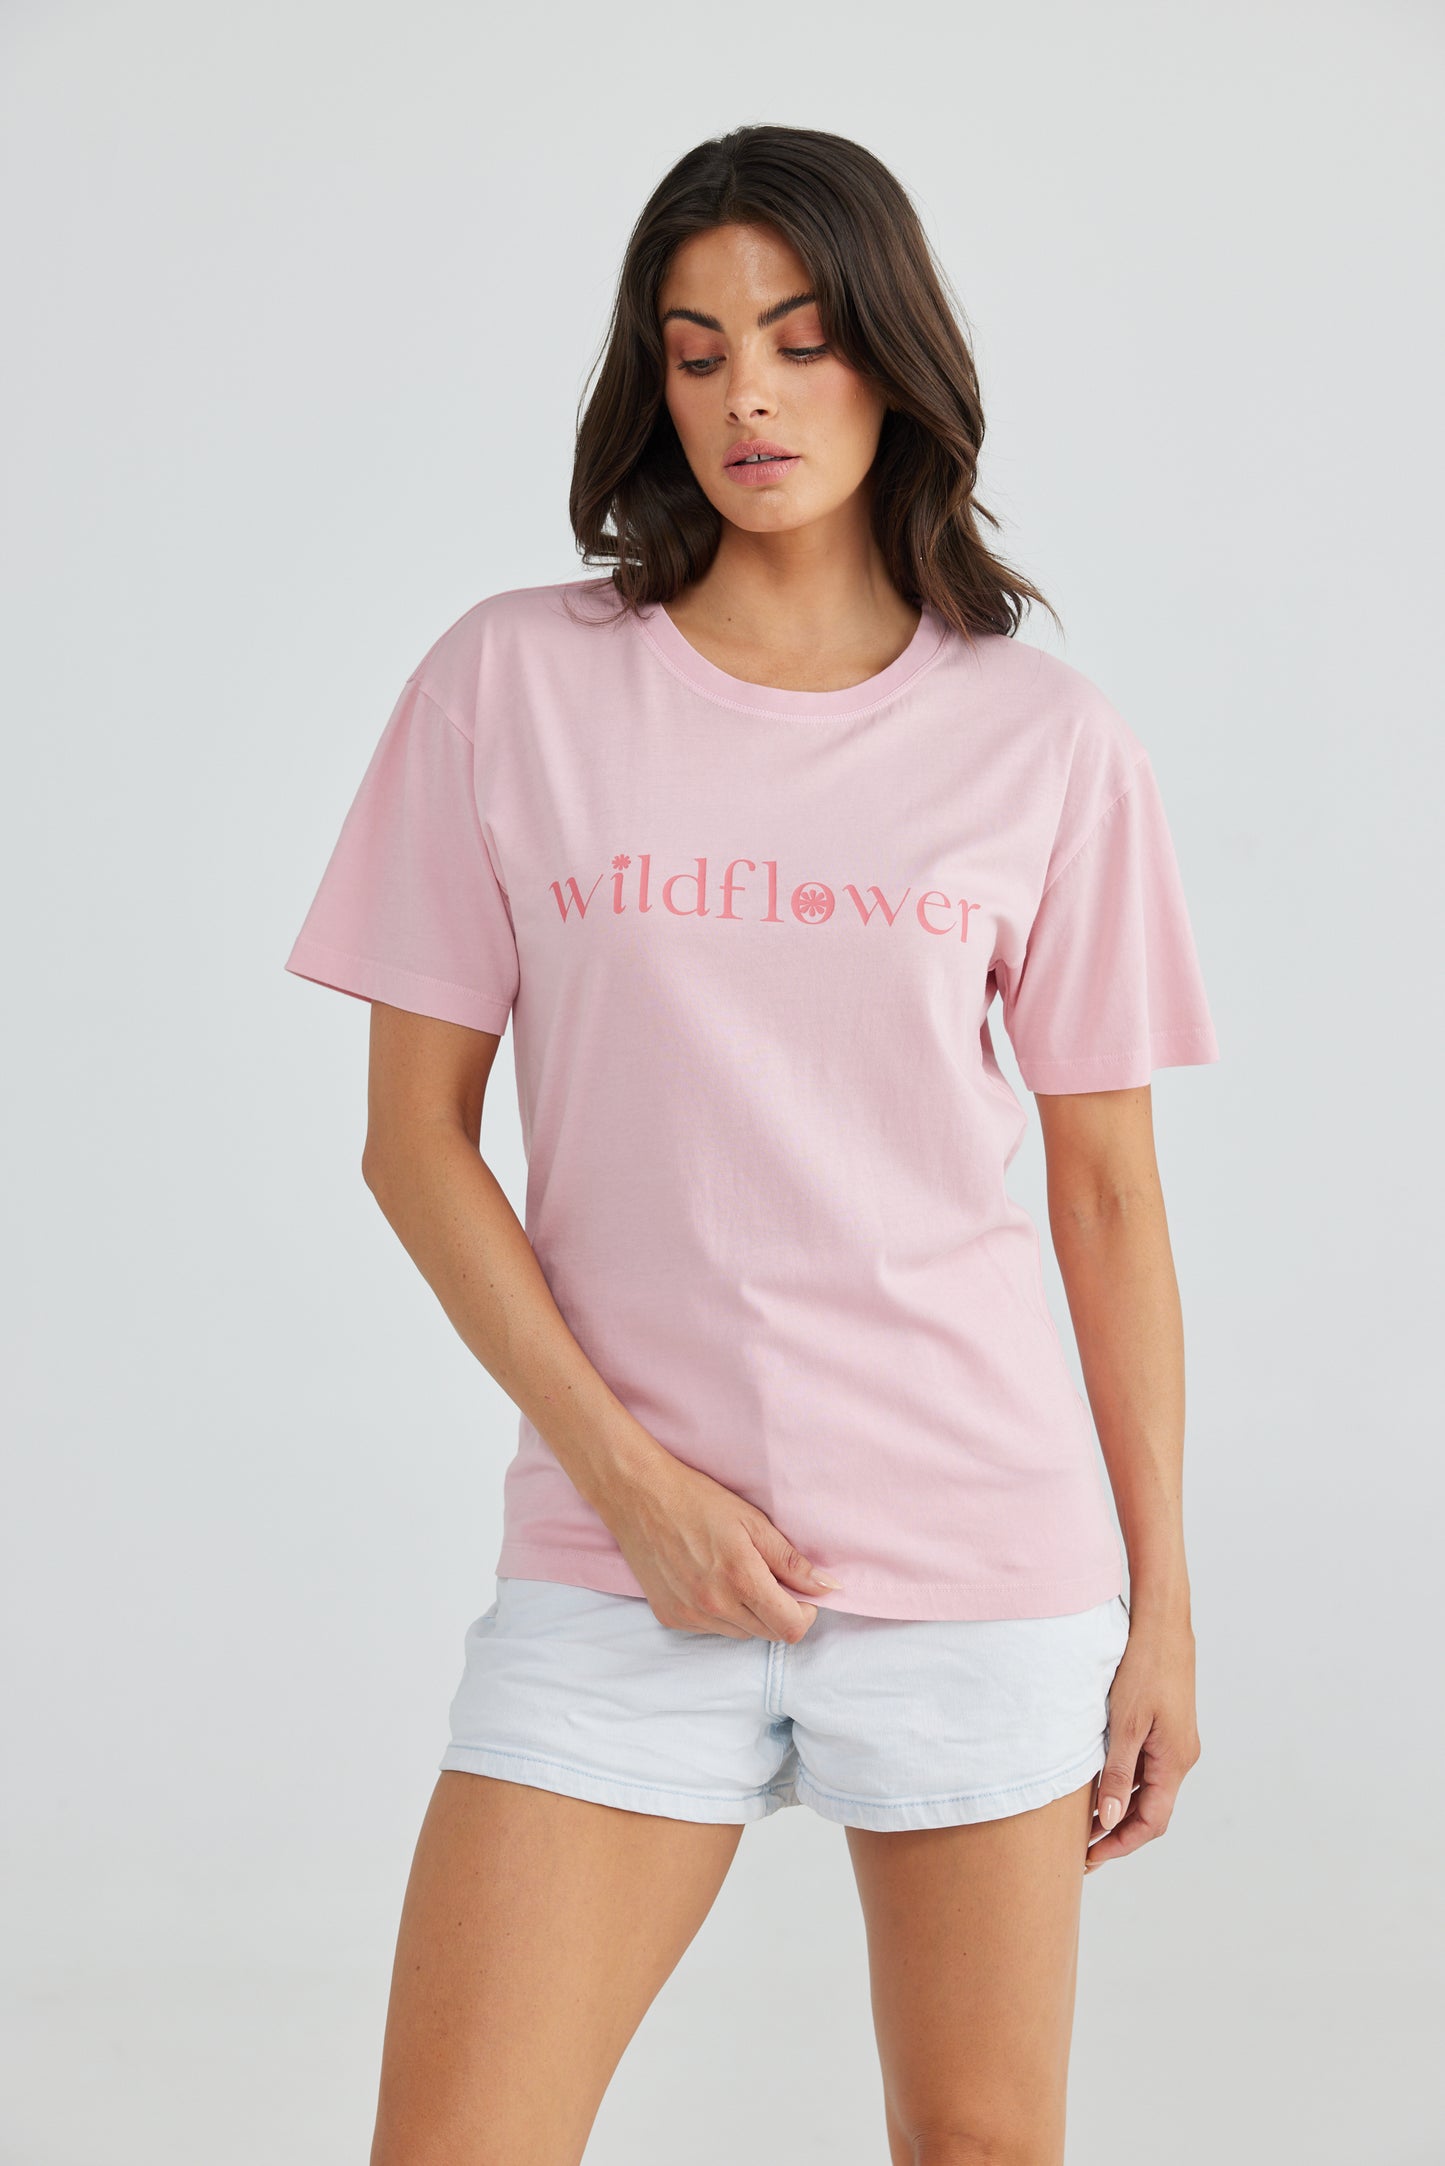 Wildflower Tee - Pink